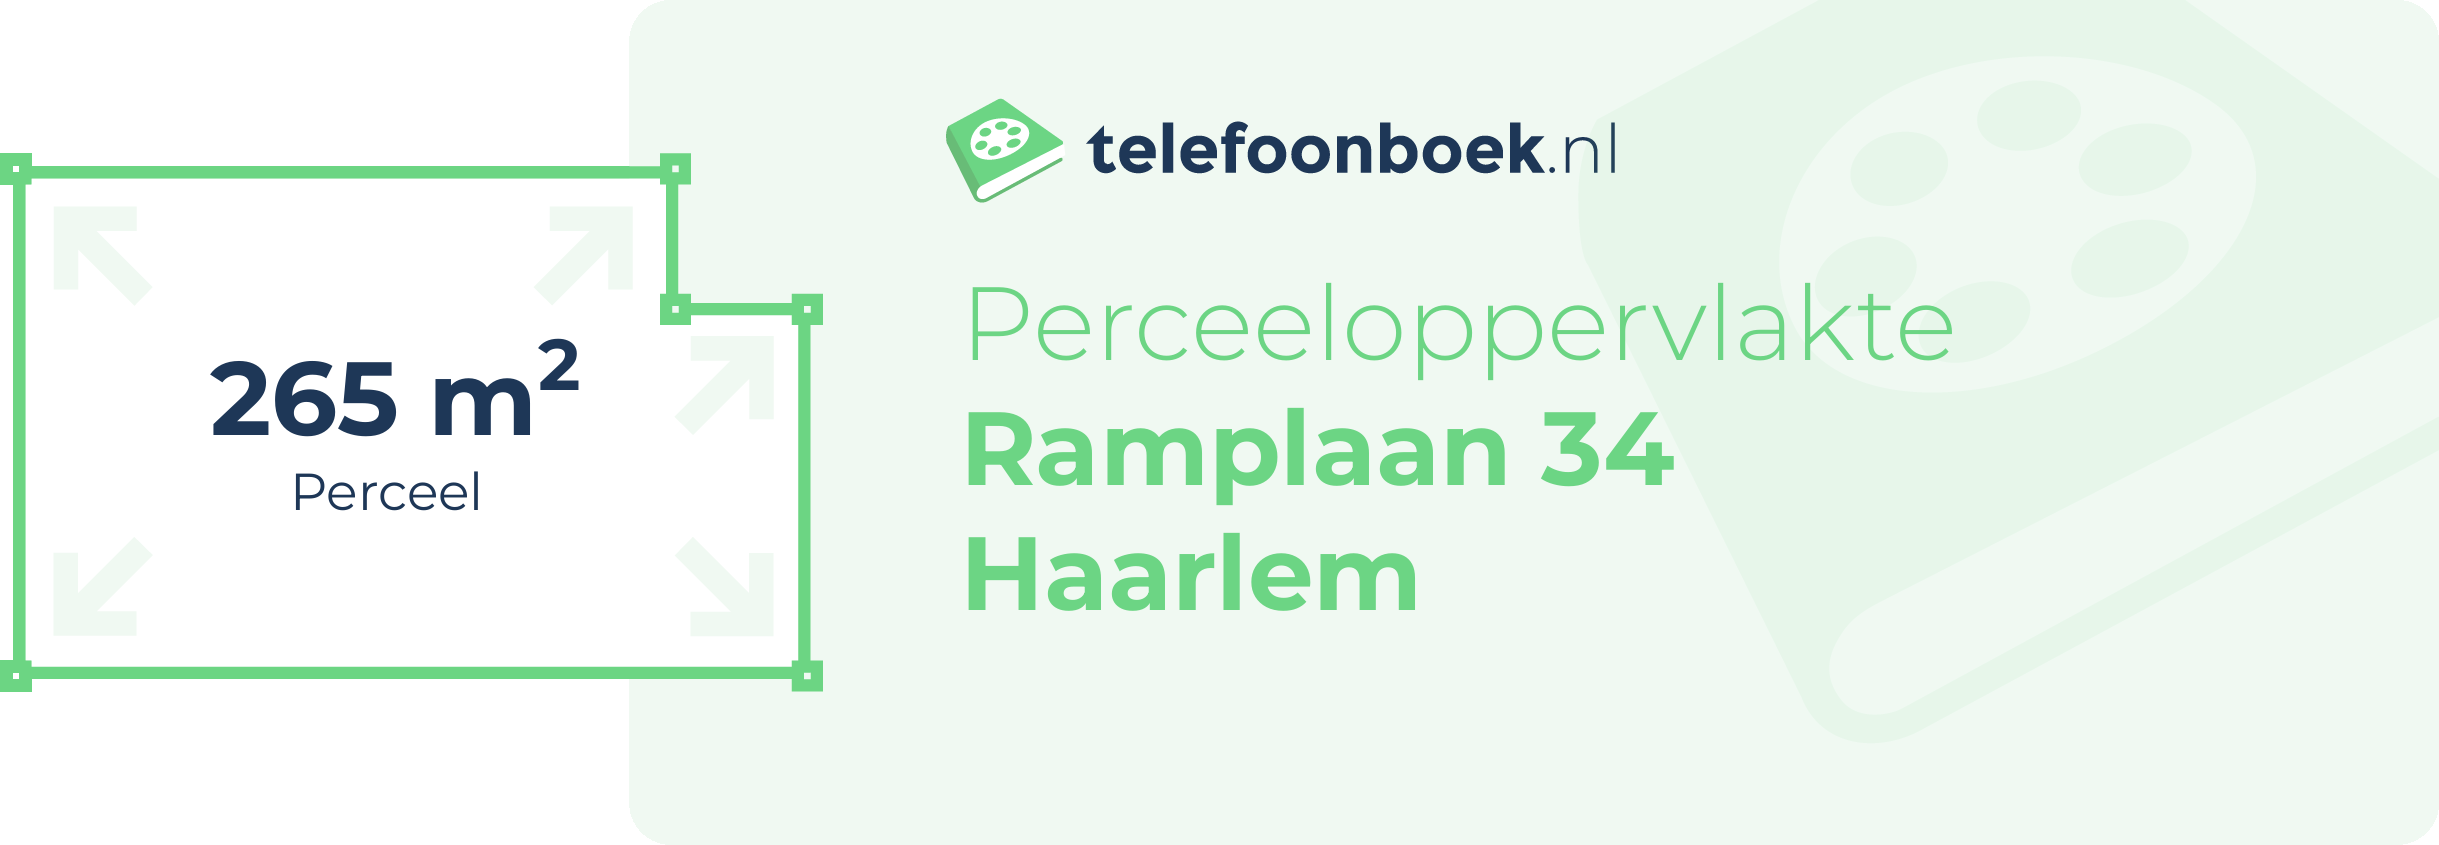 Perceeloppervlakte Ramplaan 34 Haarlem